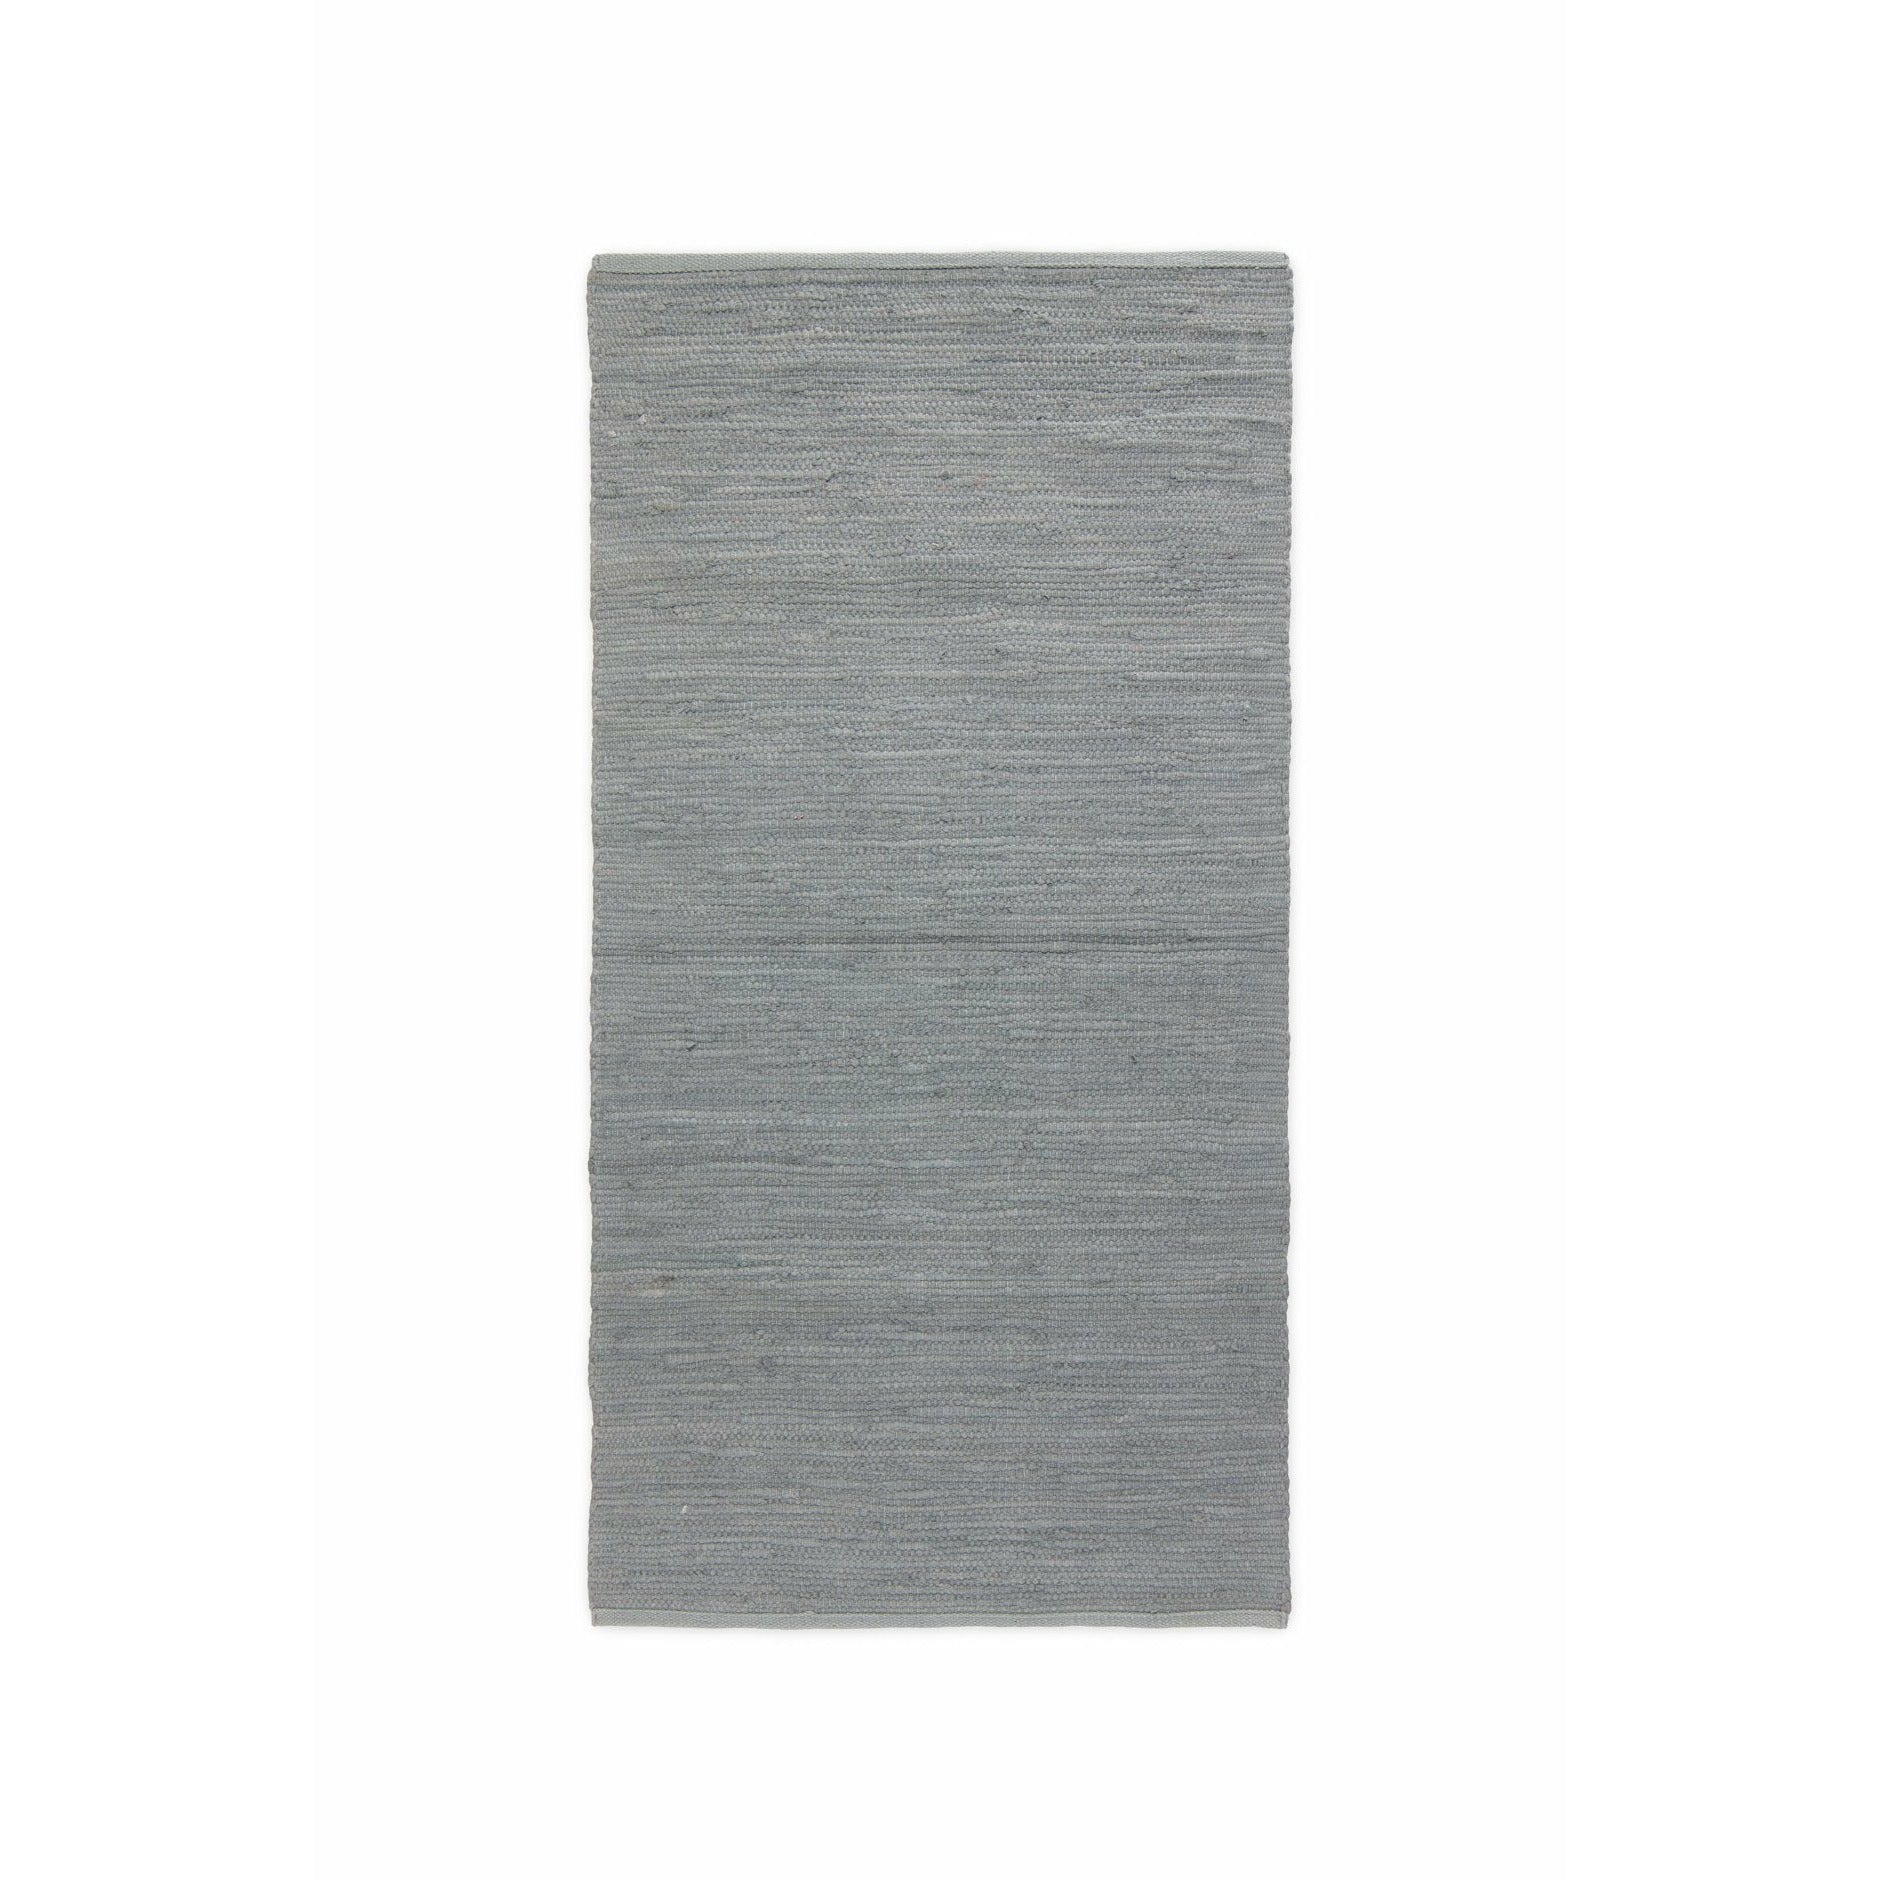 Rug Solid Coton tapis gris clair, 60 x 90 cm